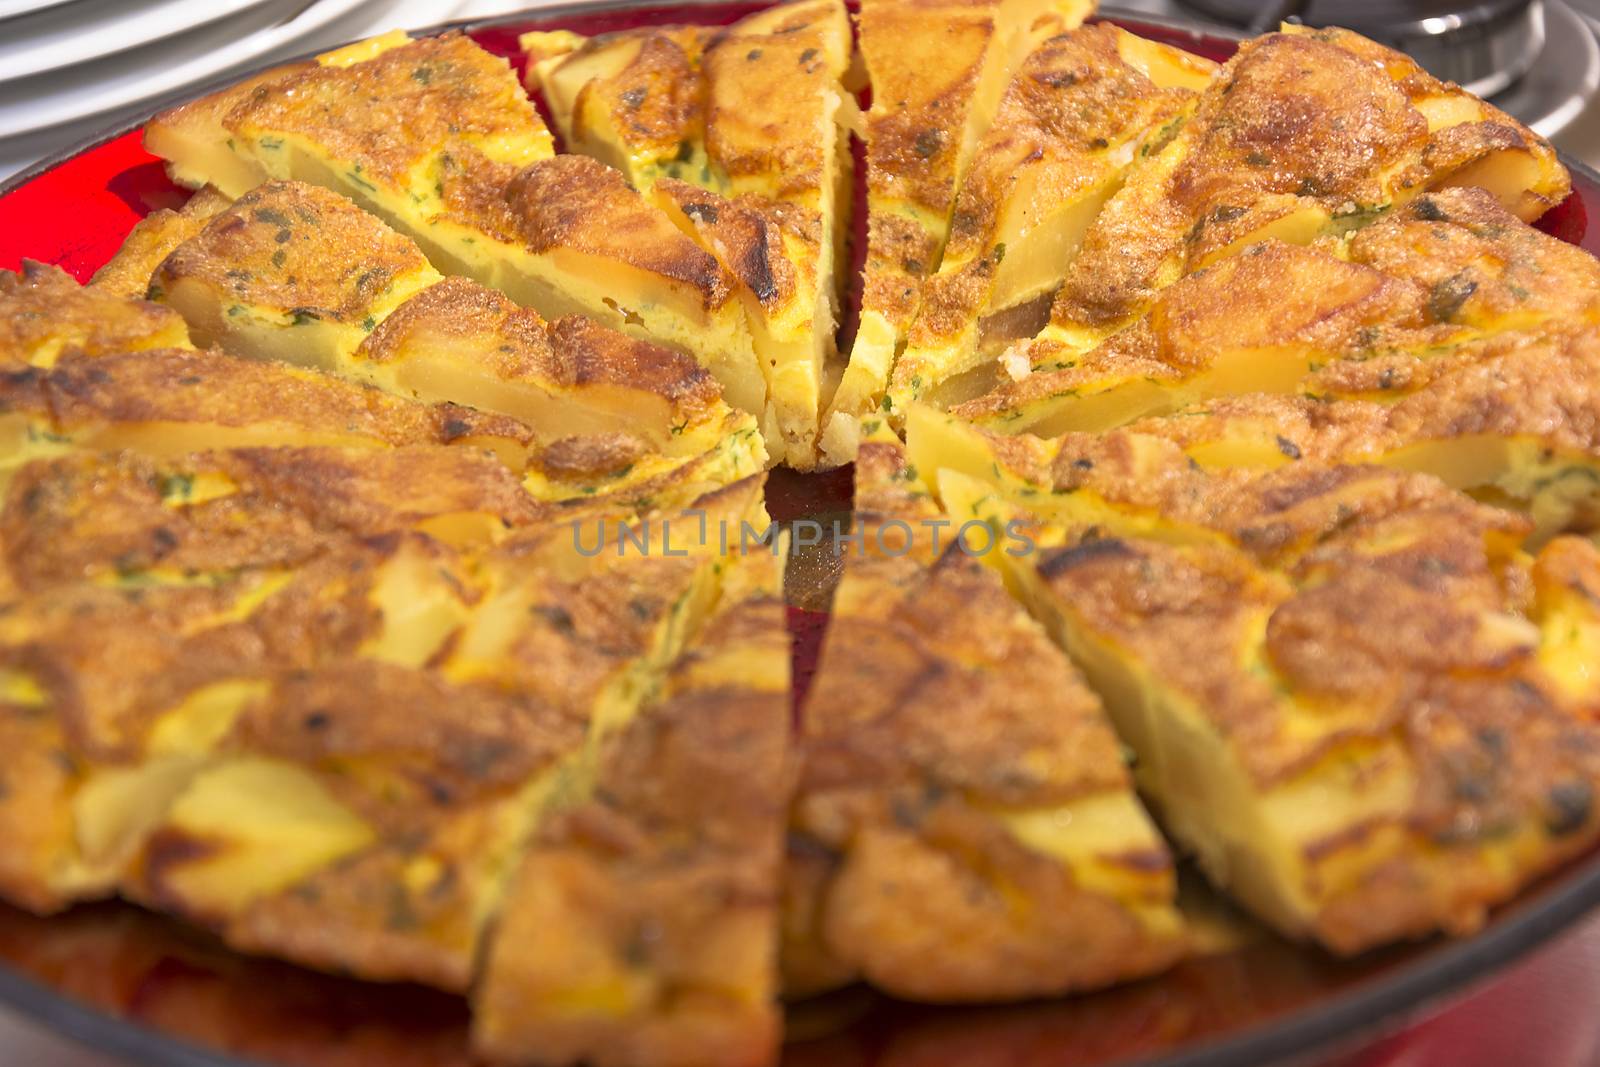 Potato omelette on slices by rarrarorro